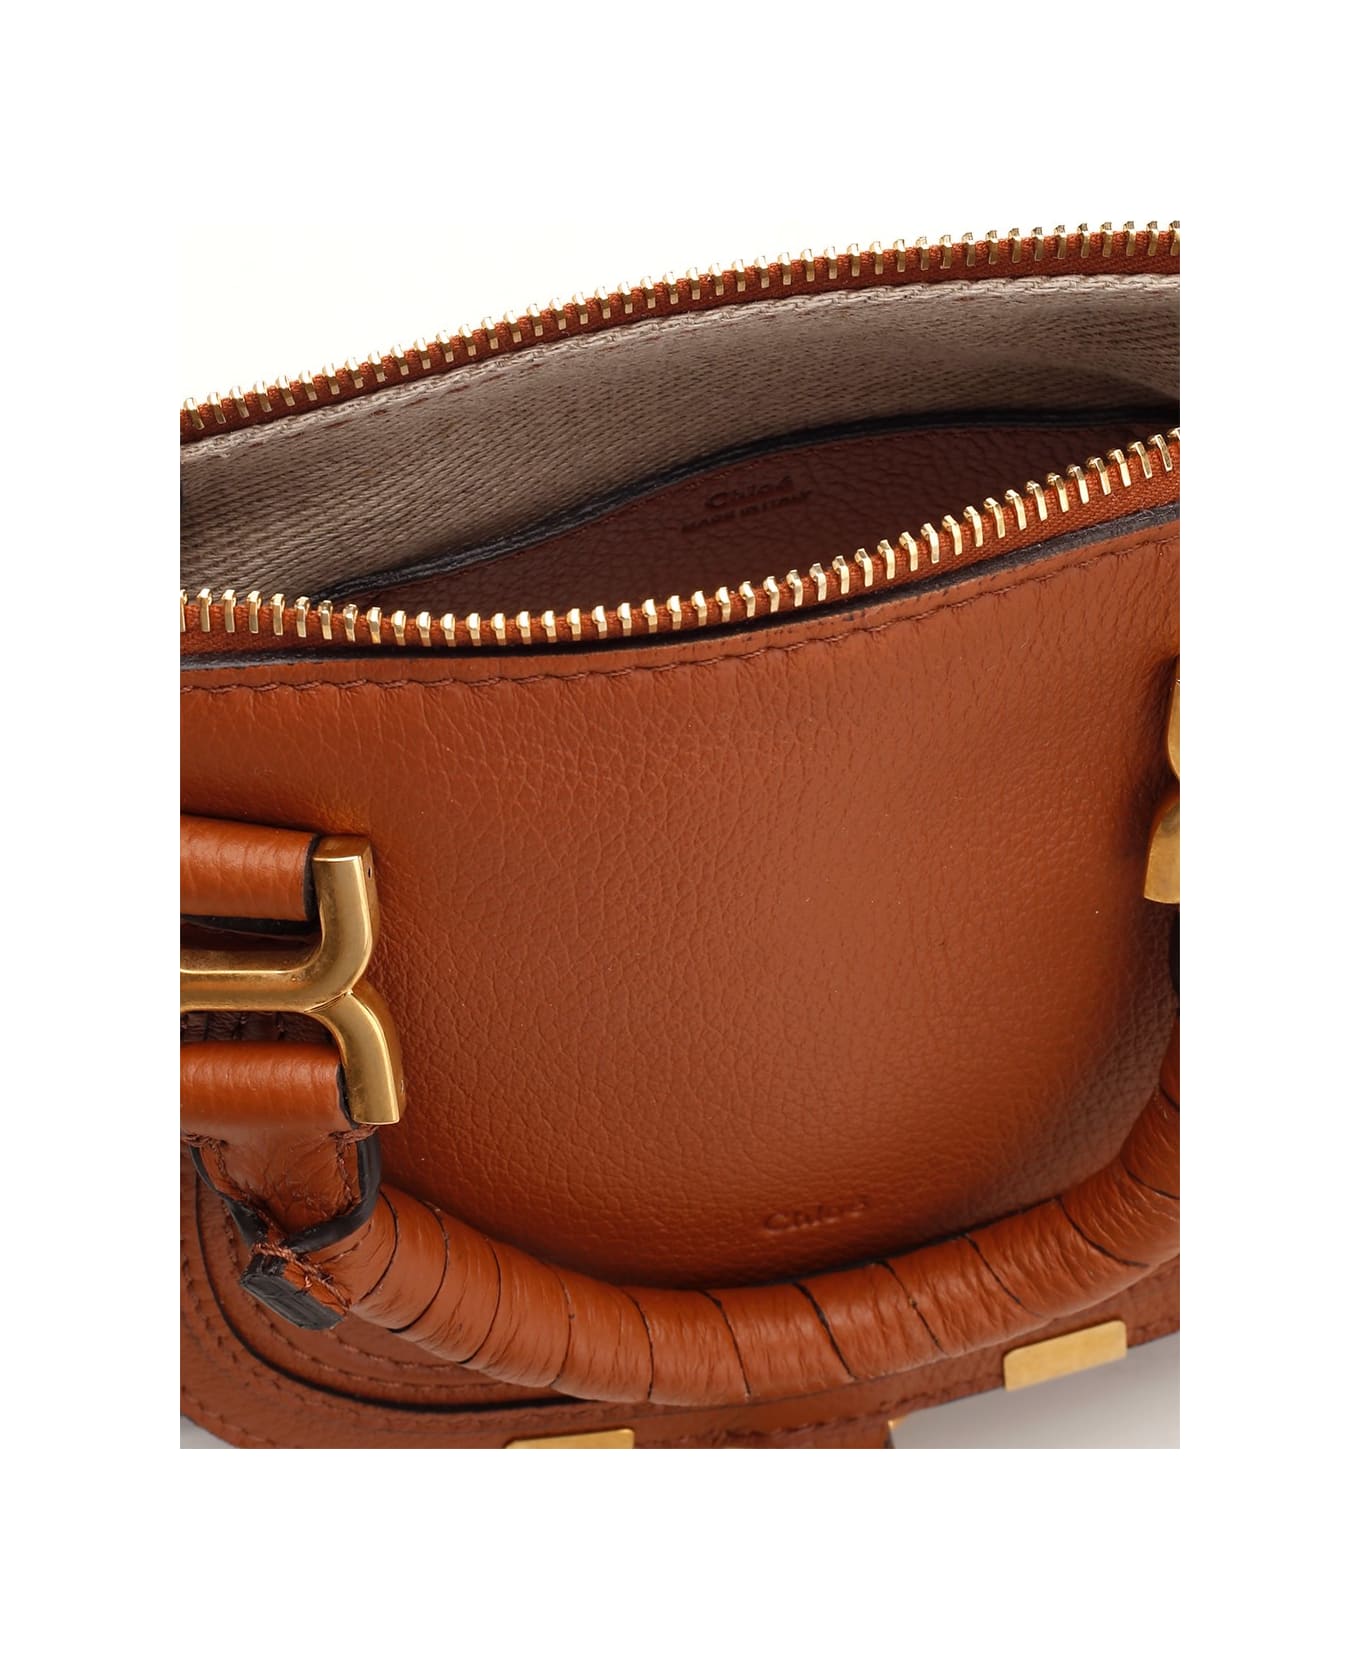 Chloé 'marcie' Handbag - Leather Brown